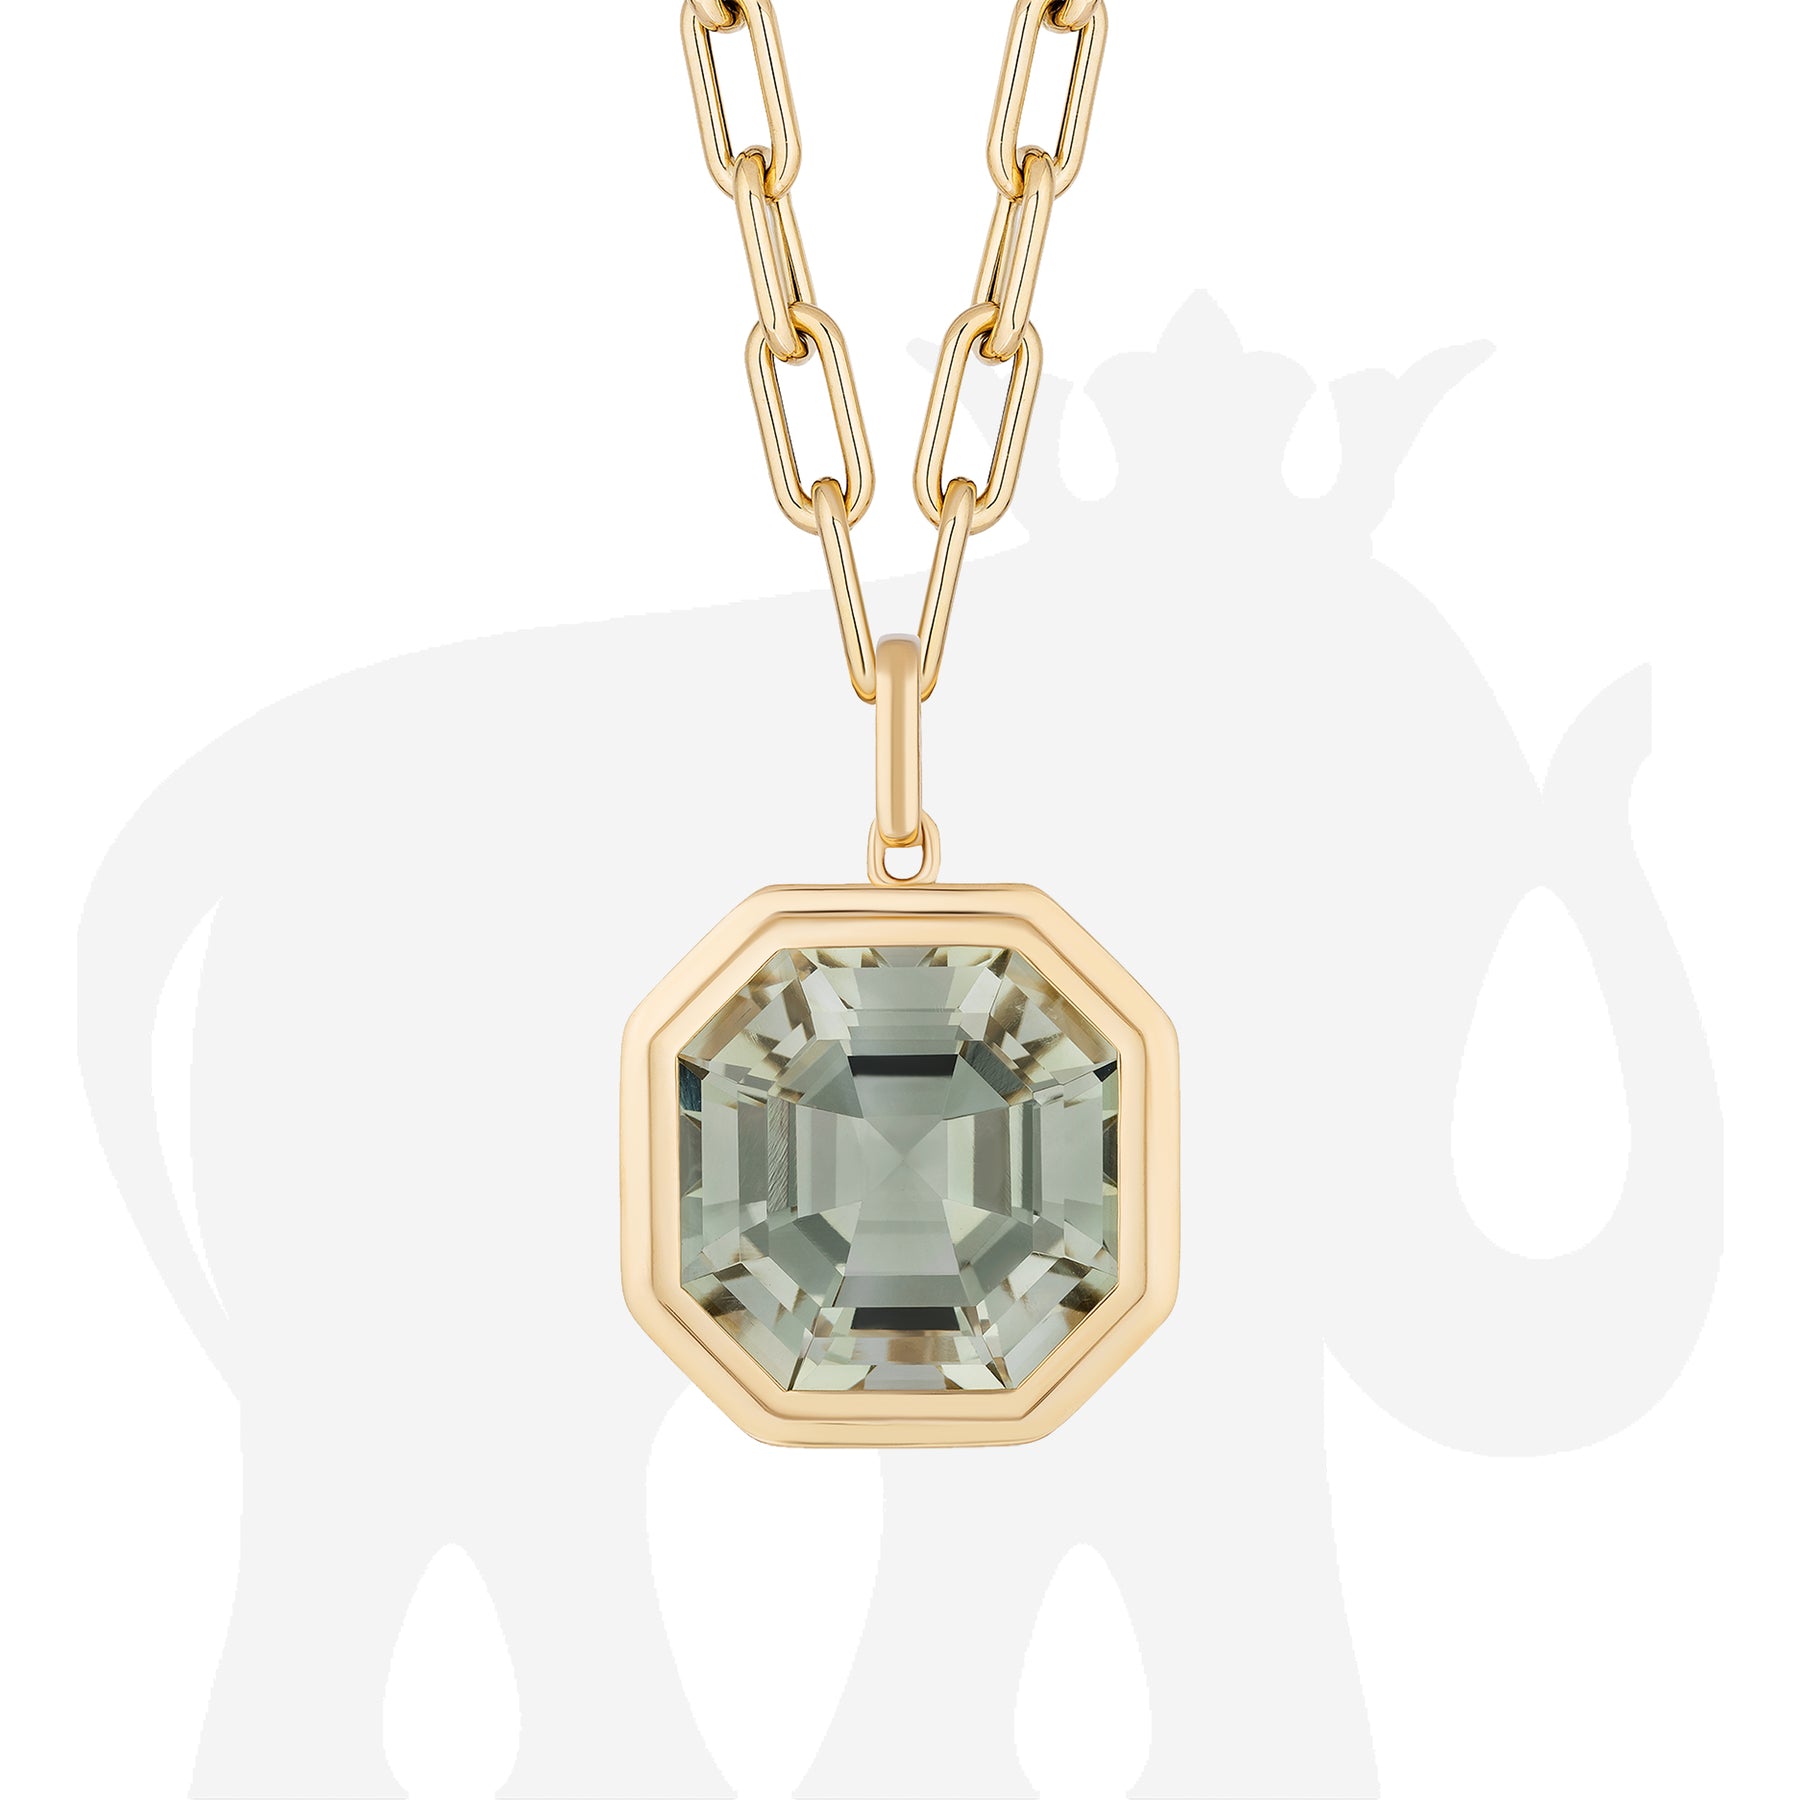 Hoop & Loop Asscher cut Solitaire Diamond Necklace in Rose Gold